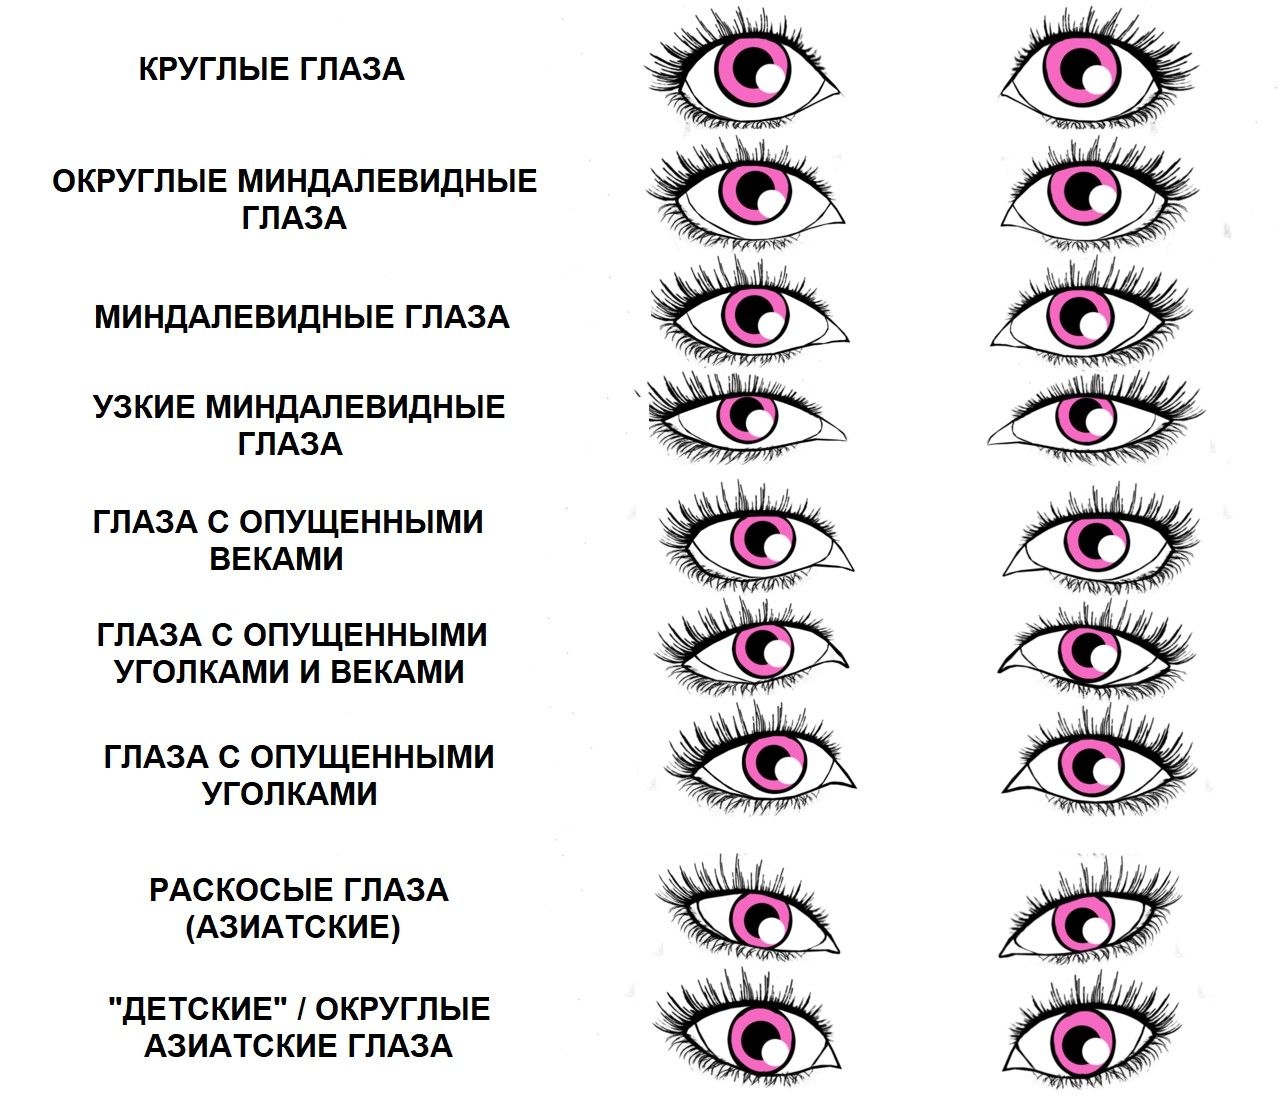 Как рисовать глаза и ресницы: изучаем особенности, происхождение и стилизацию